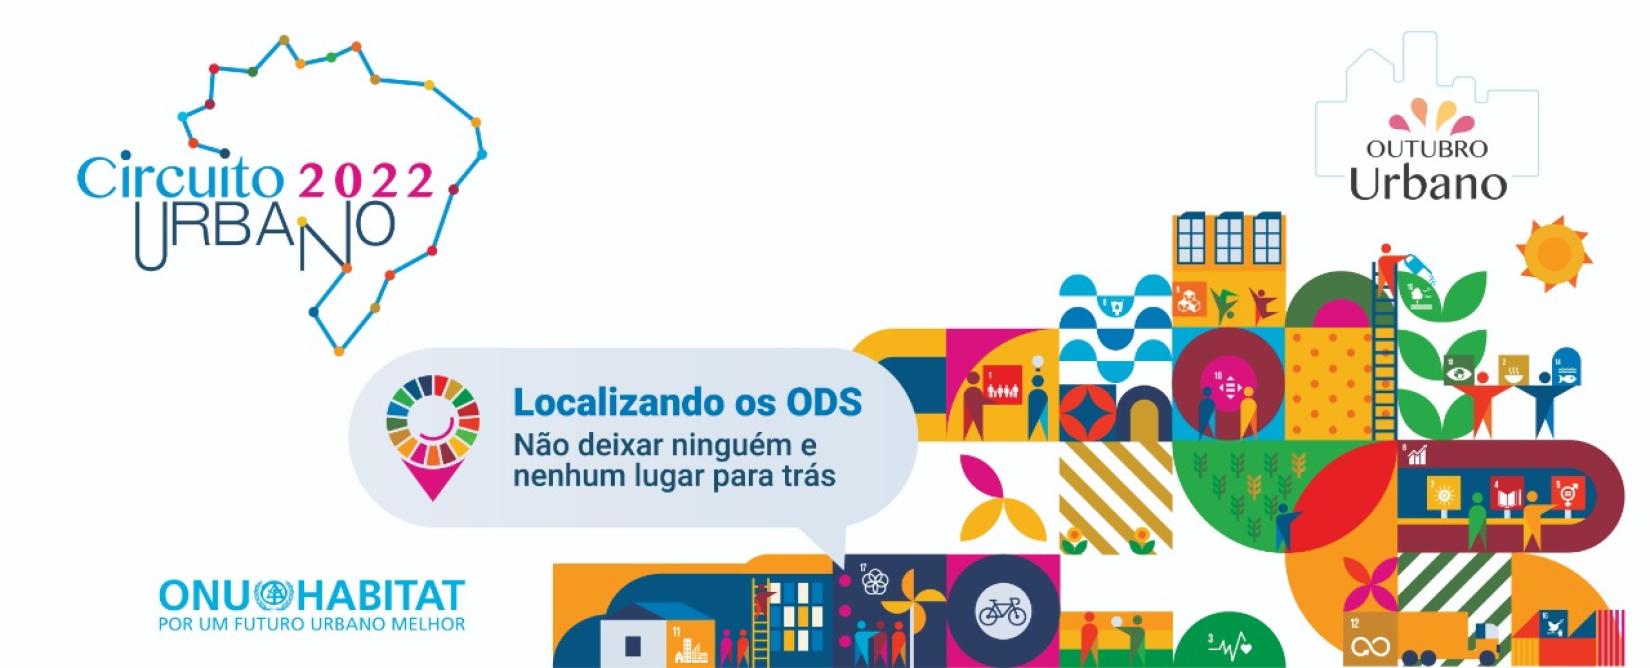 Com número recorde de eventos, o Circuito Urbano 2022 vai debater iniciativas de cidades e territórios para a localização dos ODS em cinco diferentes linhas temáticas.